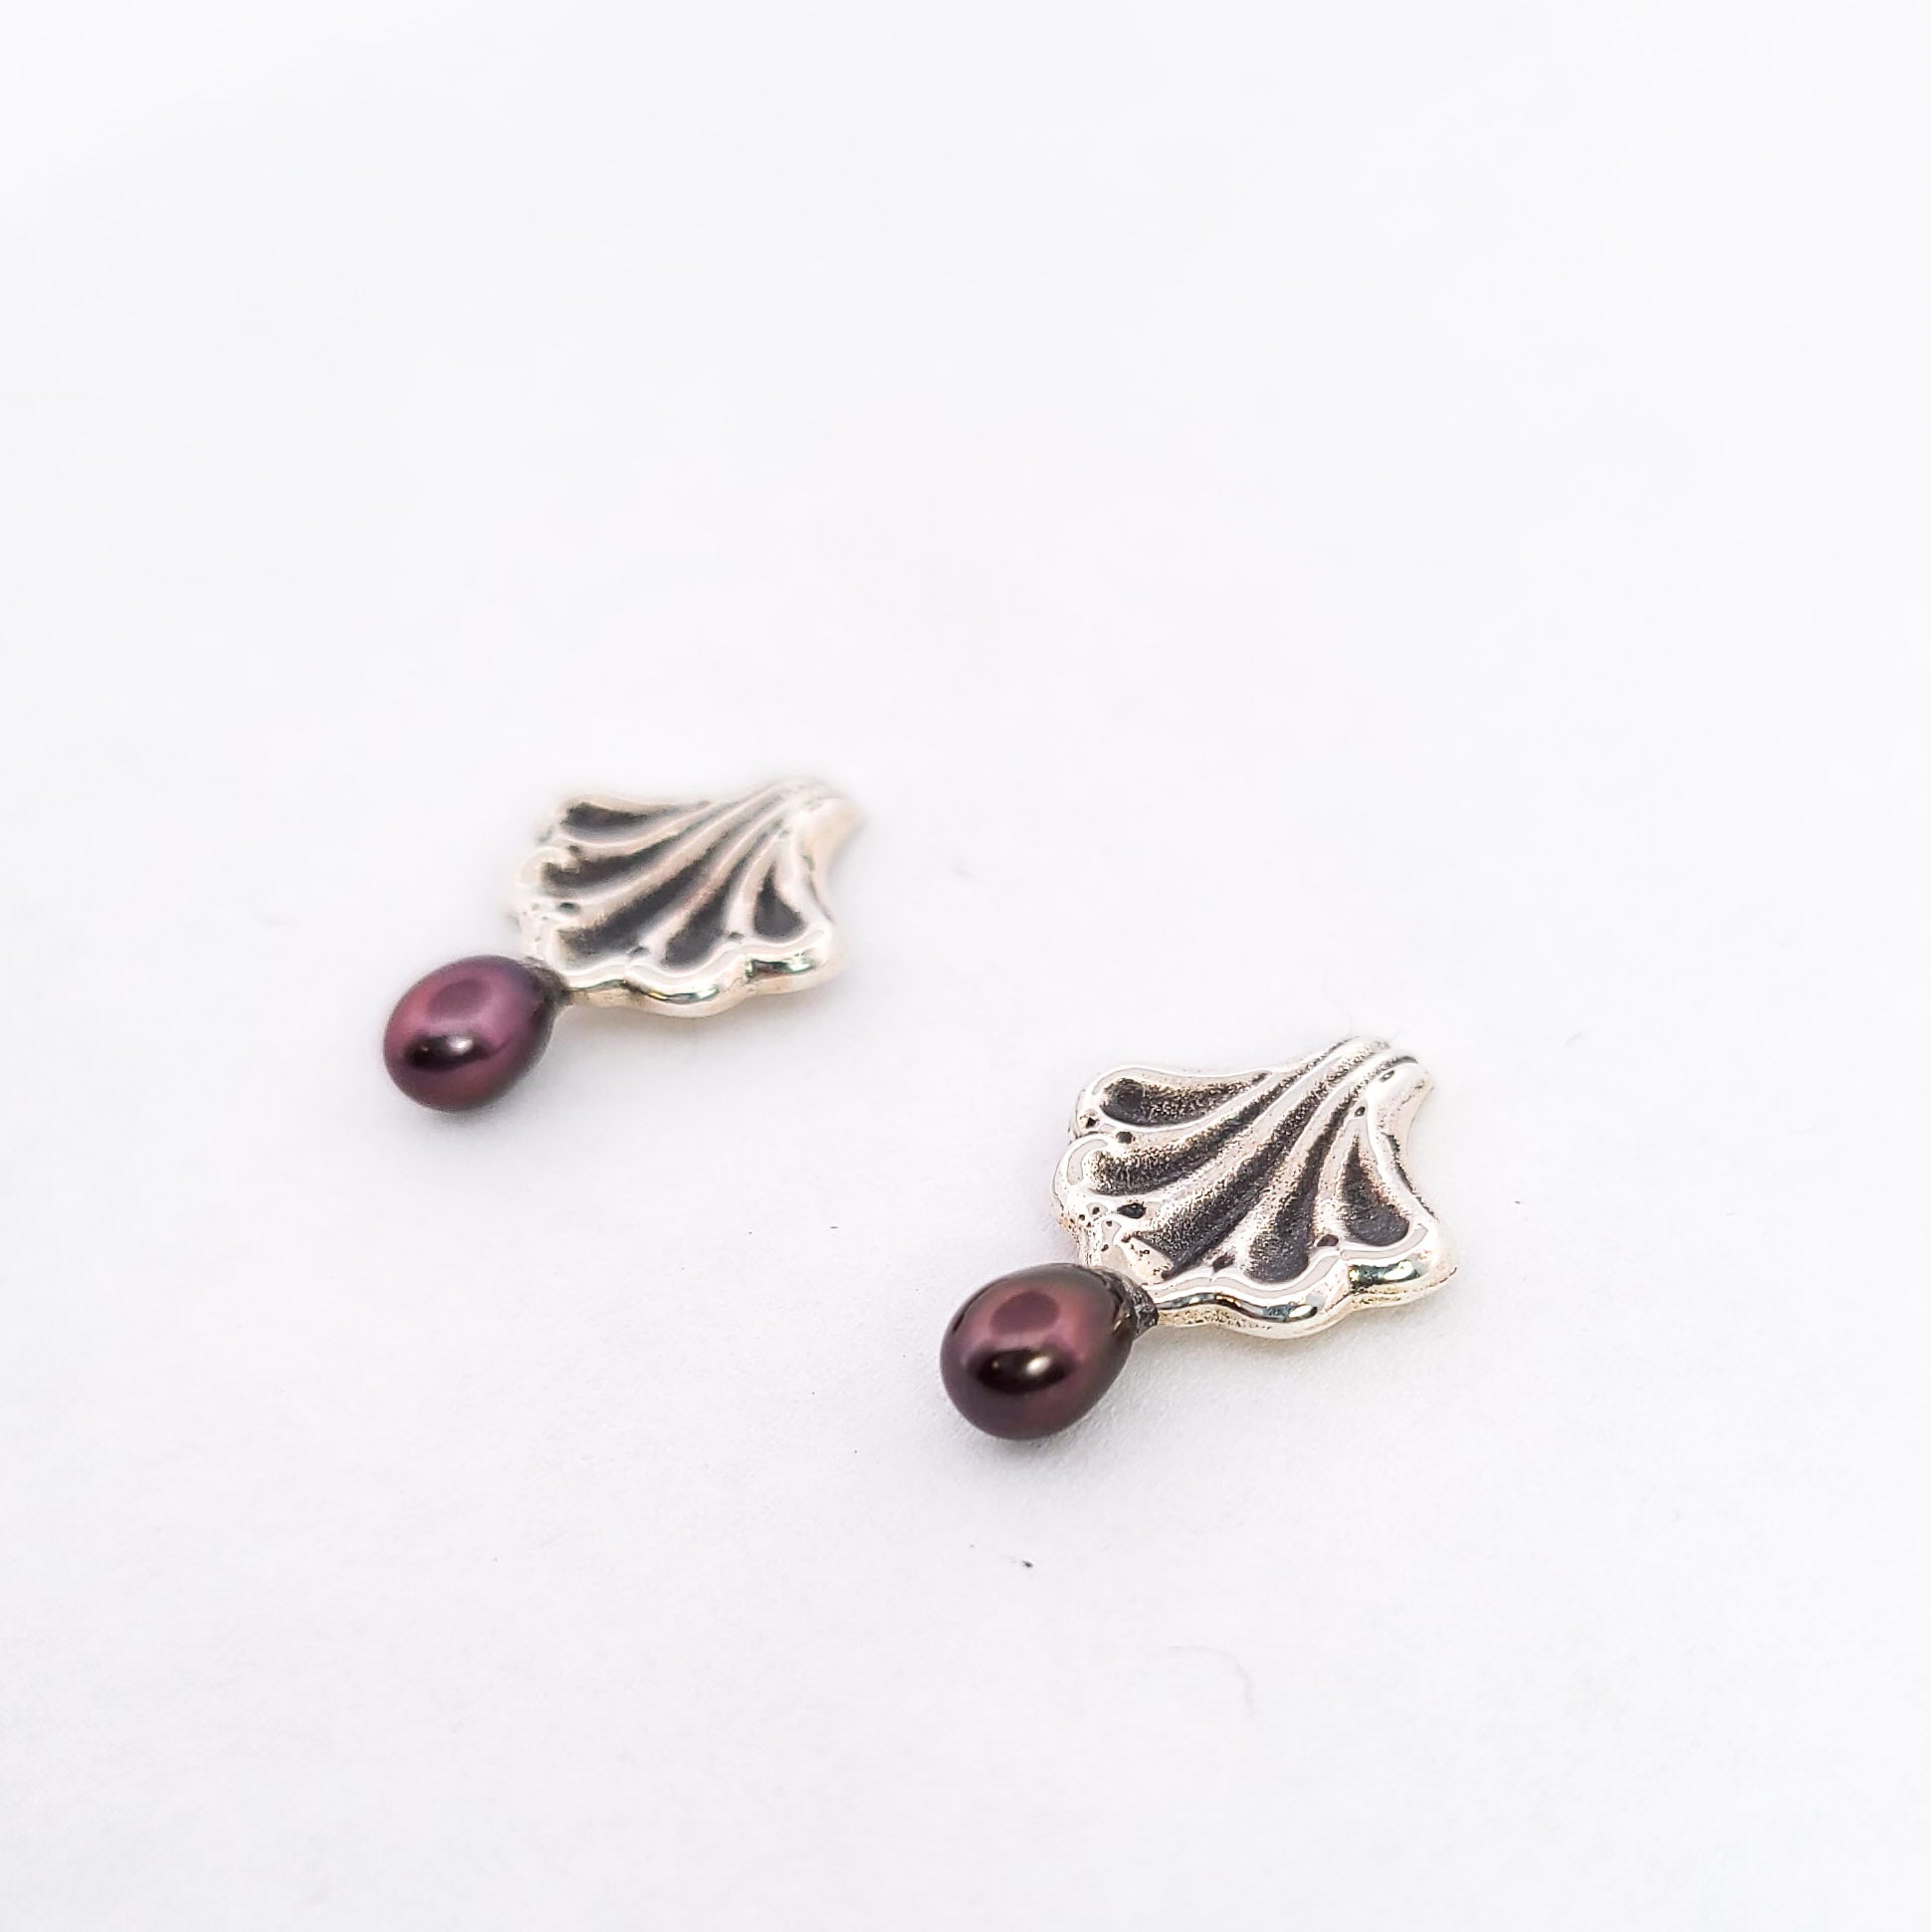 Ornate Seashell Earrings with Dark Pearls